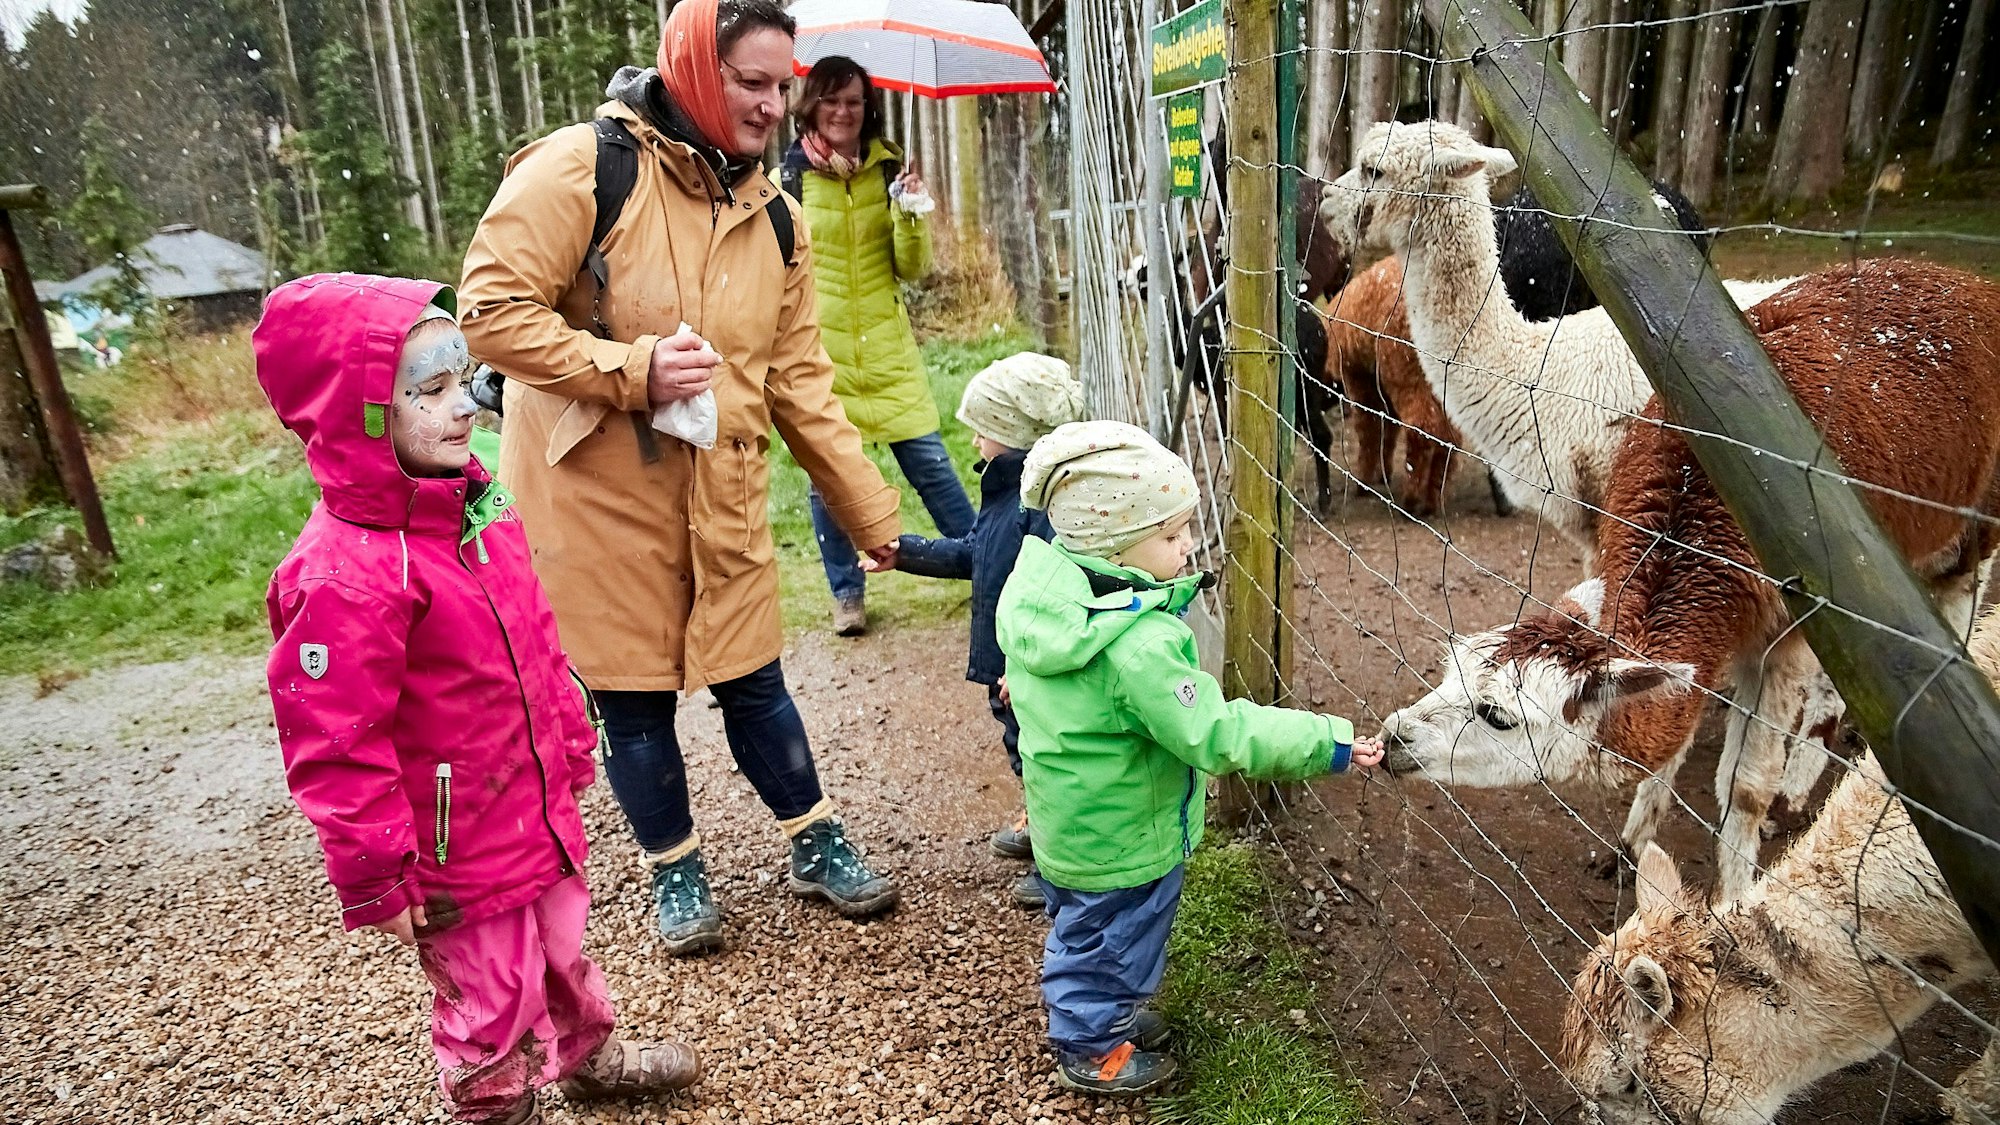 Kinder stehen mit ihren Eltern am Zaun und füttern Alpakas.